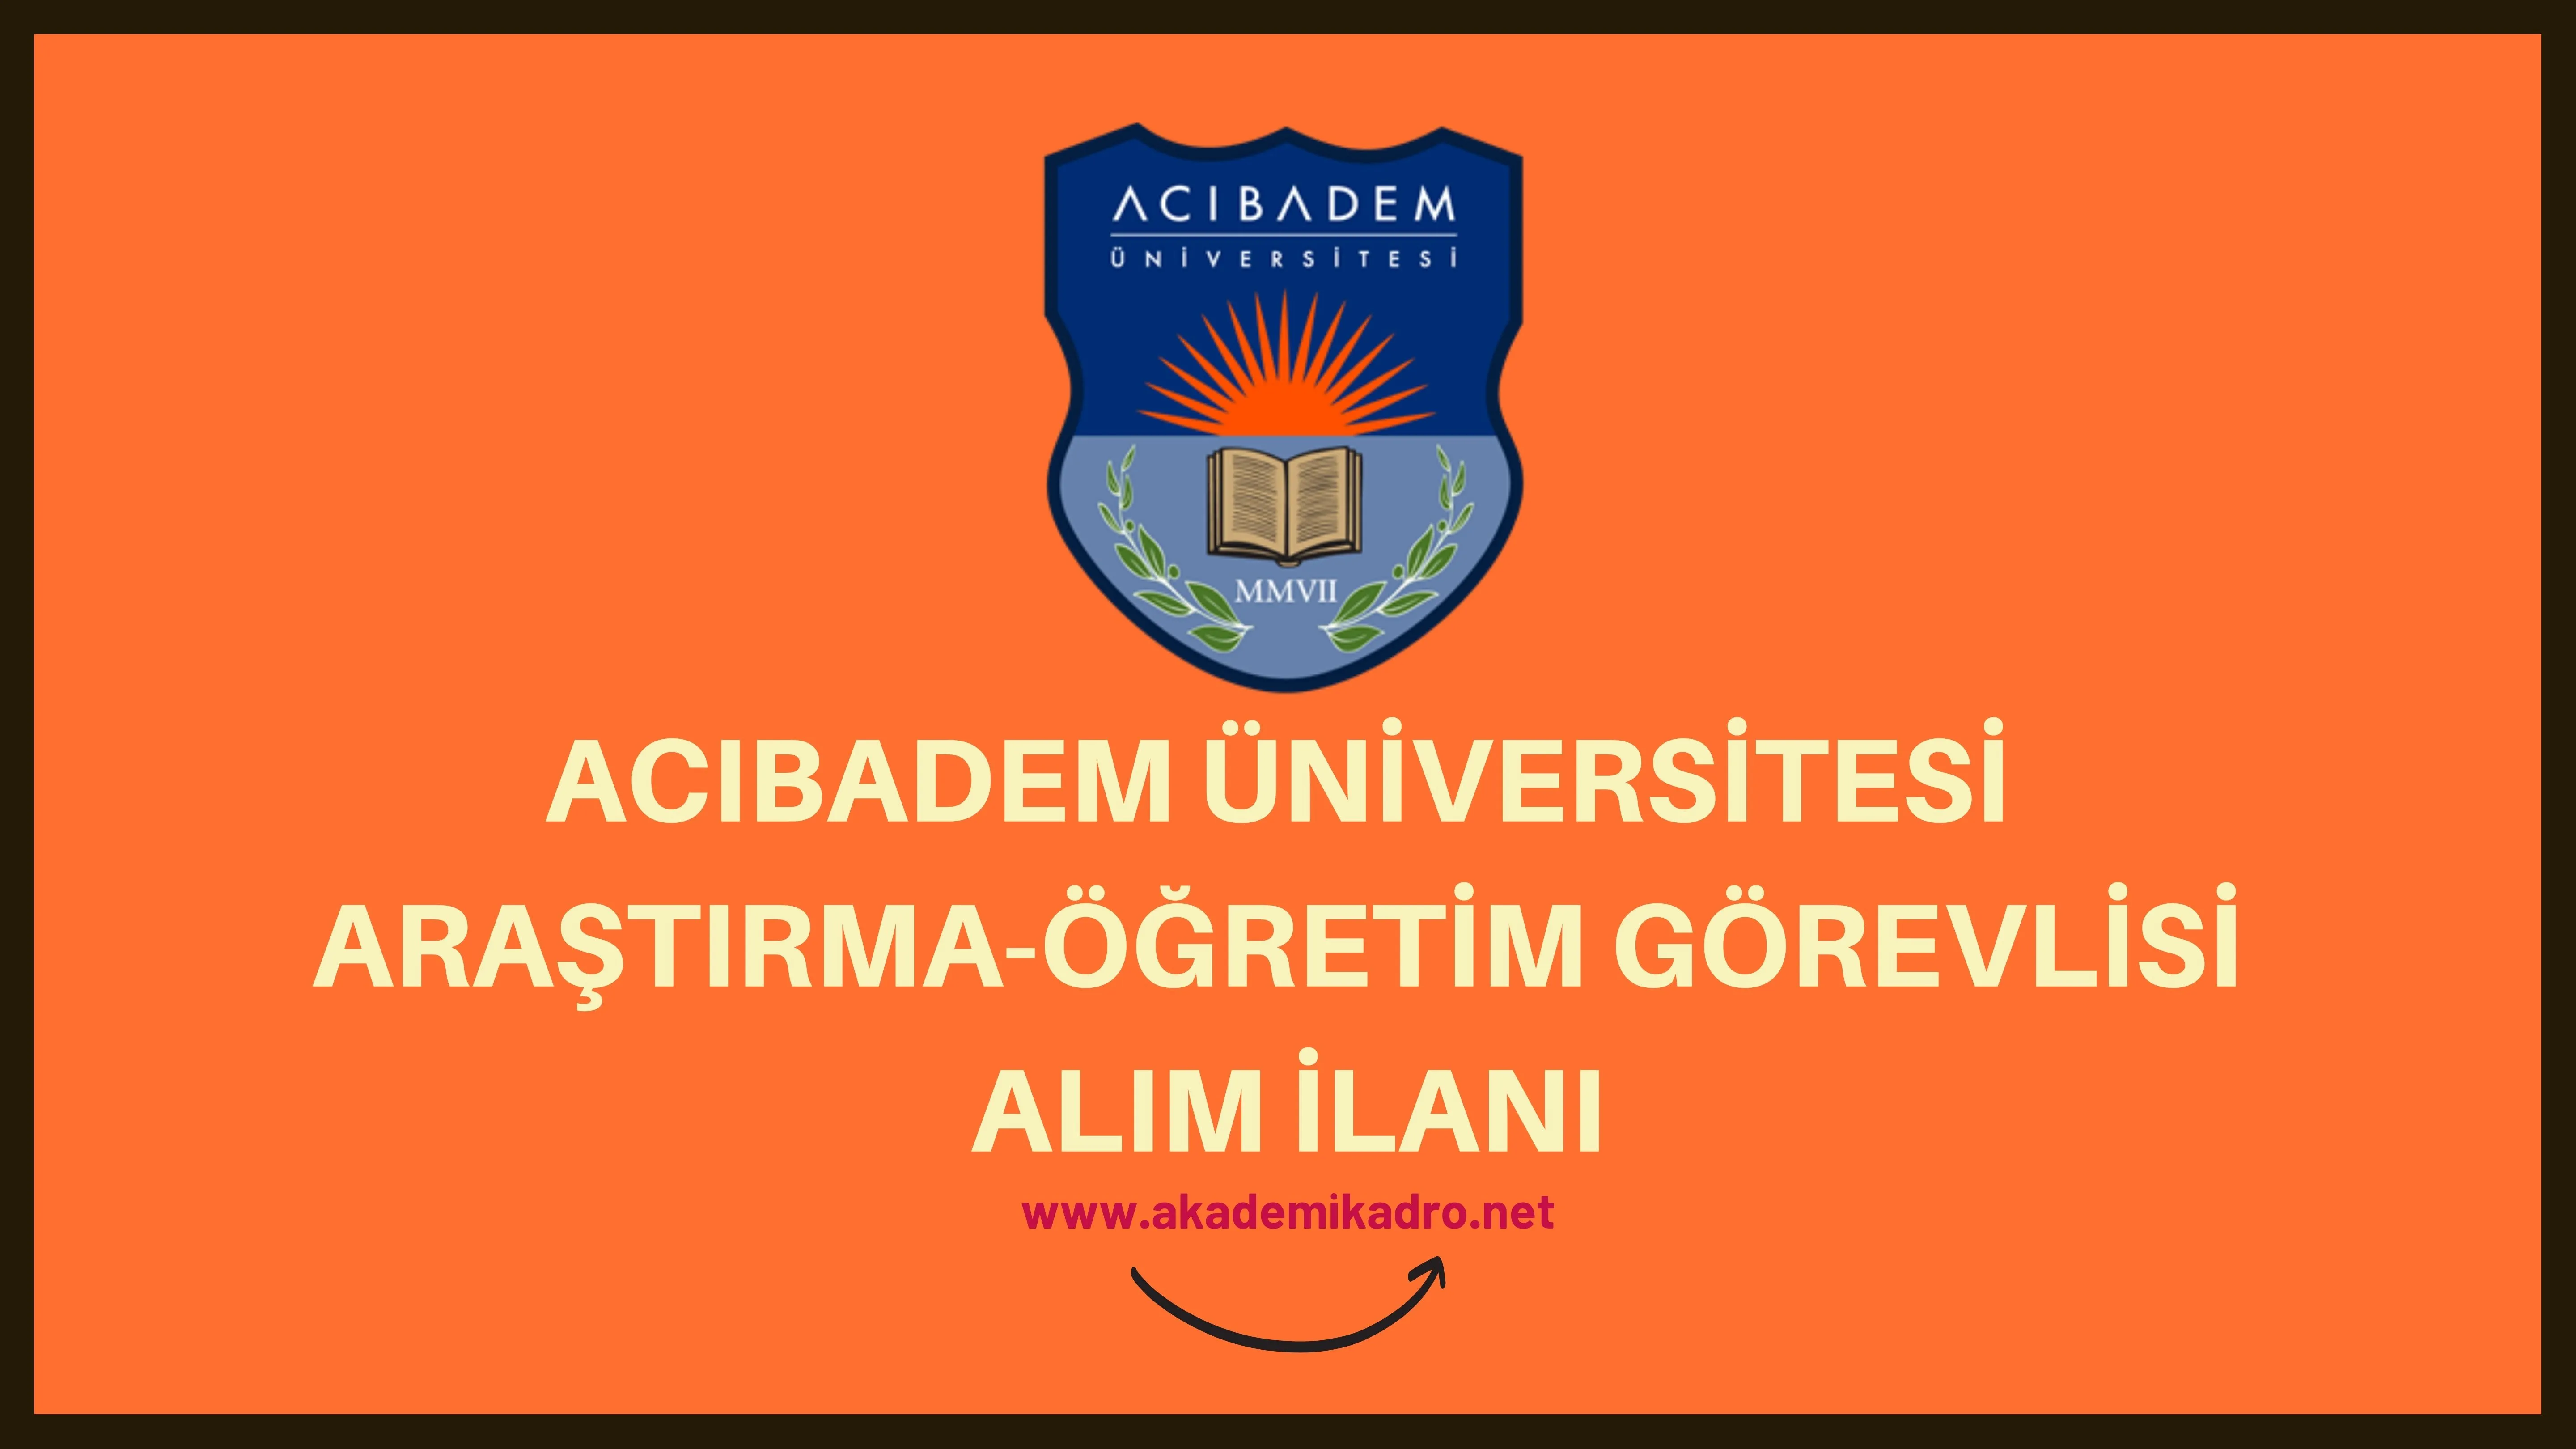 Acıbadem Mehmet Ali Aydınlar Üniversitesi 3 Araştırma Görevlisi alacaktır. Son başvuru tarihi 14 Ekim 2022